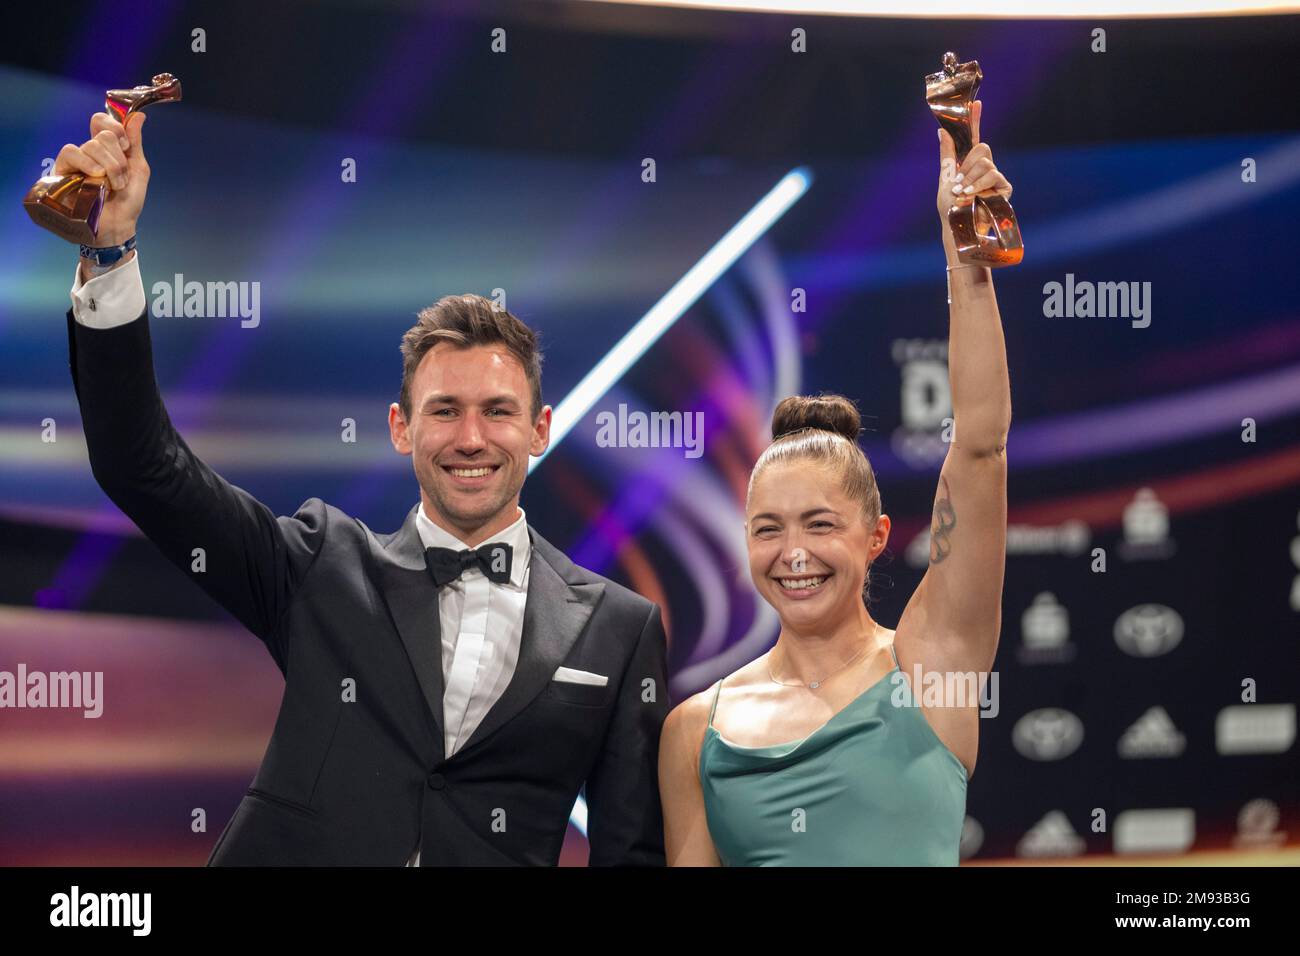 Gina Lueckenkemper und Niklas Kaul ,  Sportler des Jahres, Verleihung der Ehrung im Jahre 2022, 18.12.2022,  Eibner-Pressefoto/Sascha Walther Stock Photo